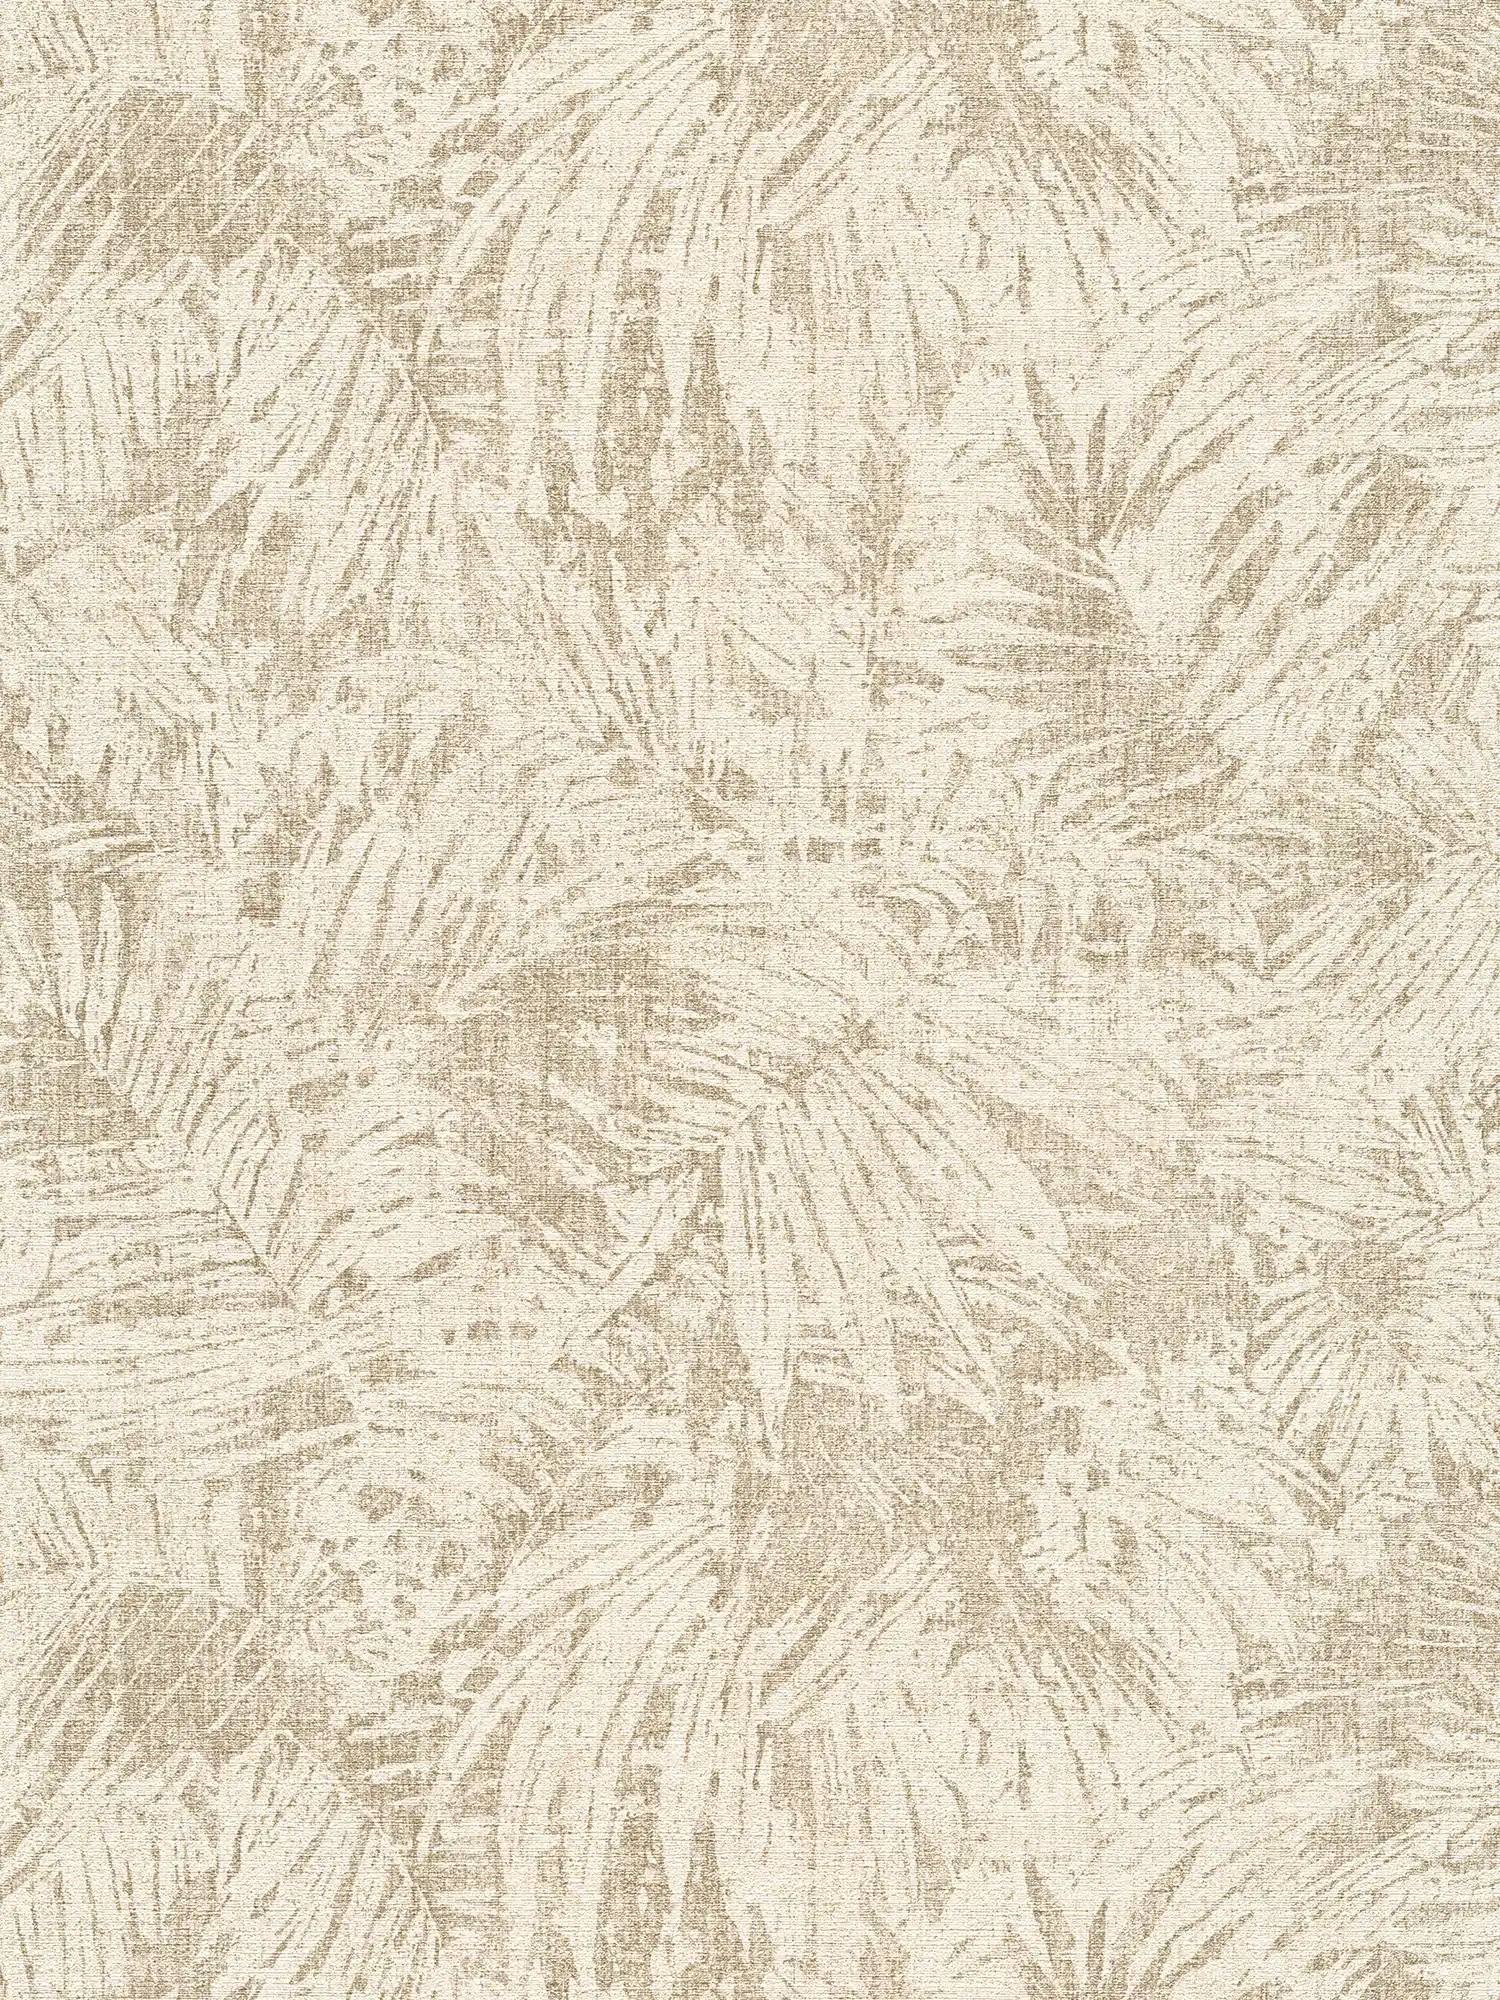 Wallpaper leaves pattern & linen effect in colonial style - Brown, Beige
